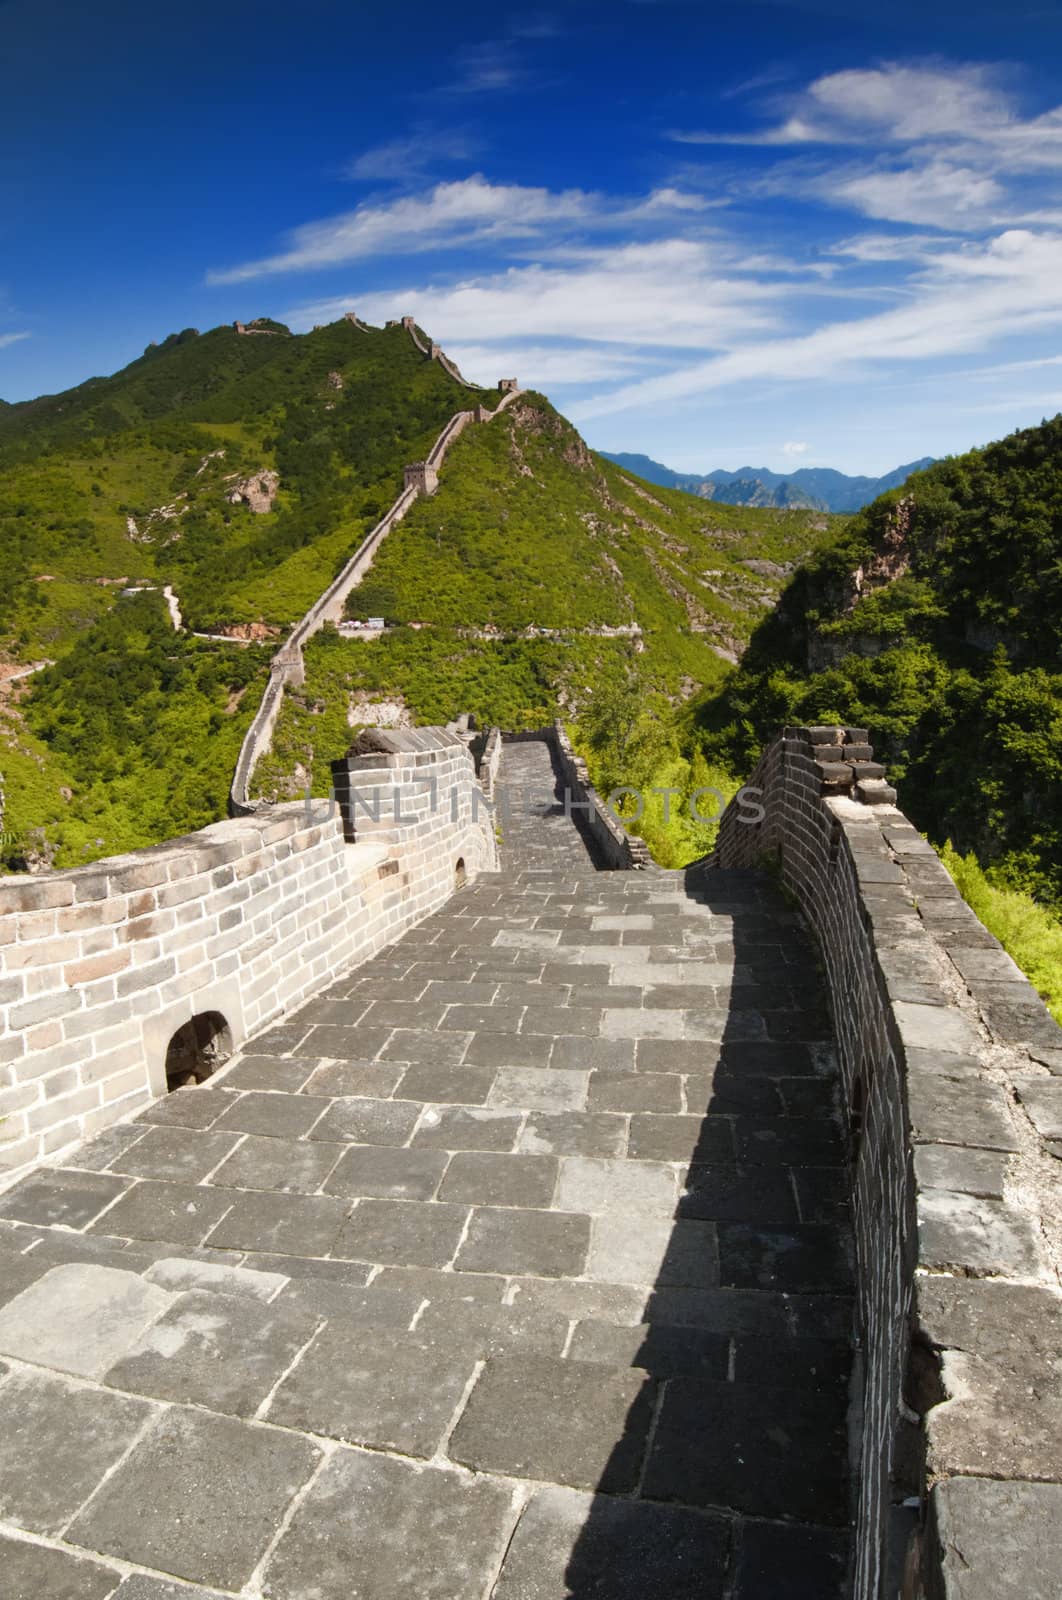 The Great Wall of China between Jinshanling and Simatai.